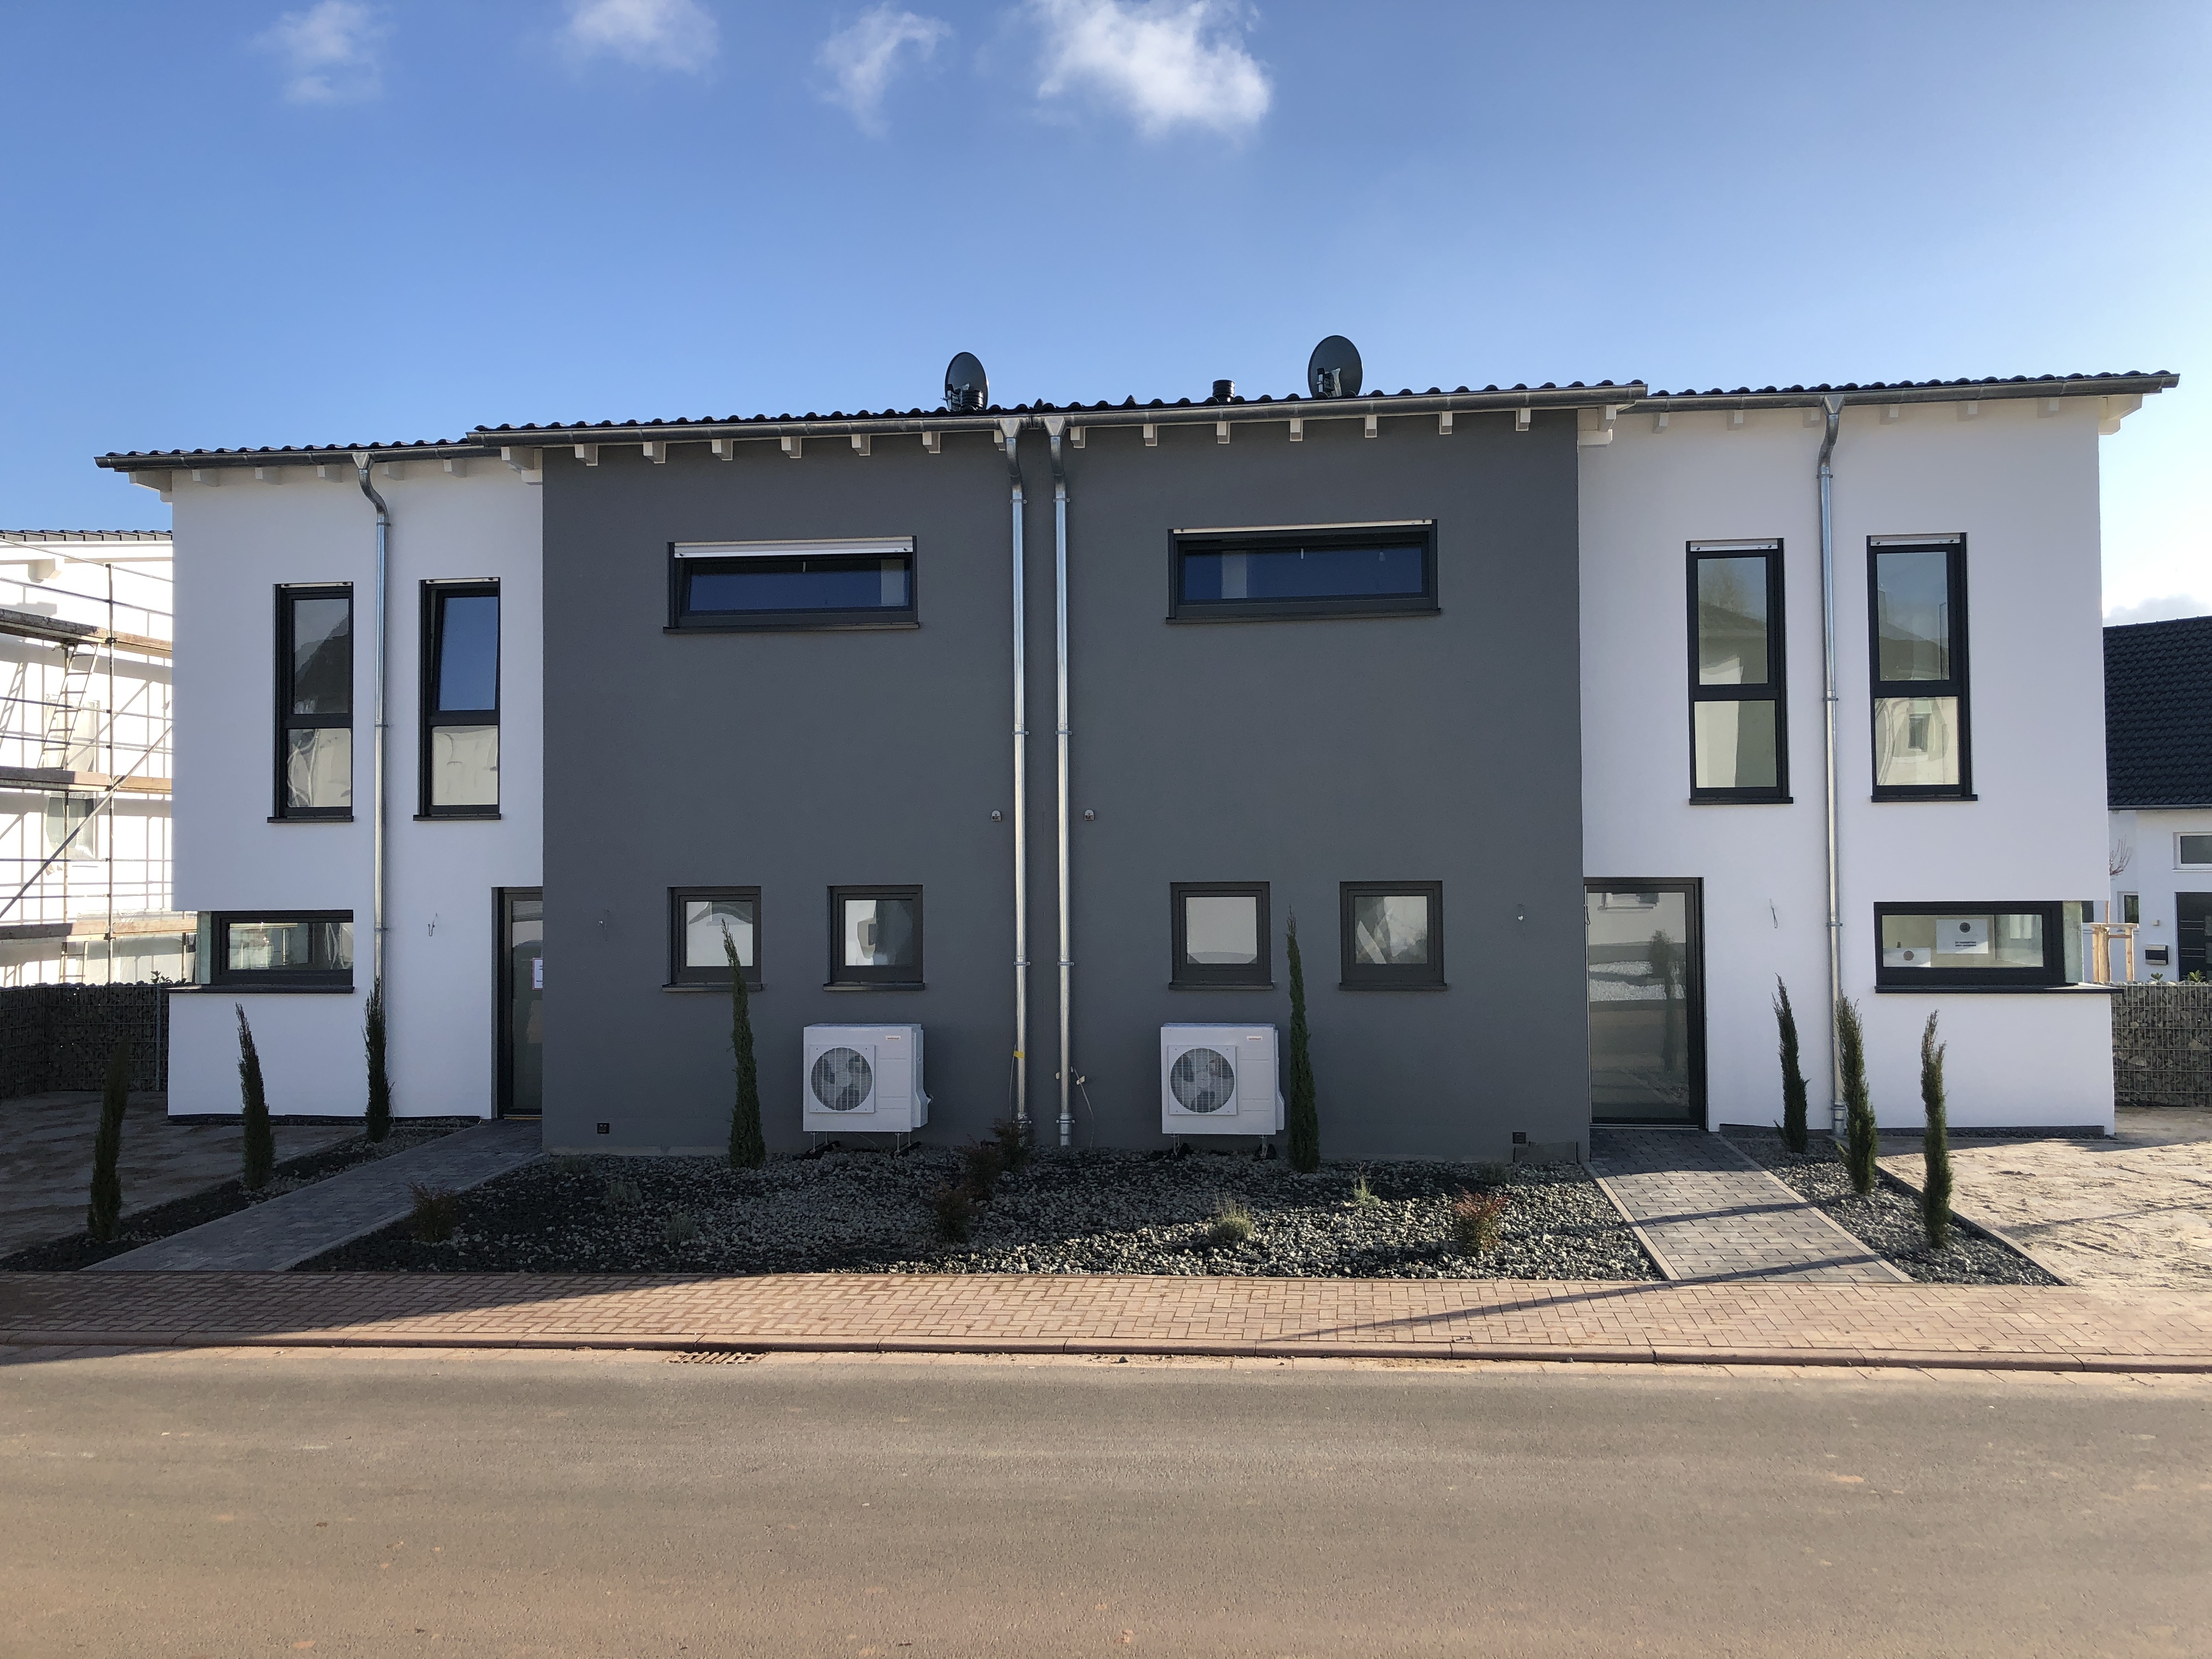 Neubau von einer Doppelhausanlage in Roxheim 1